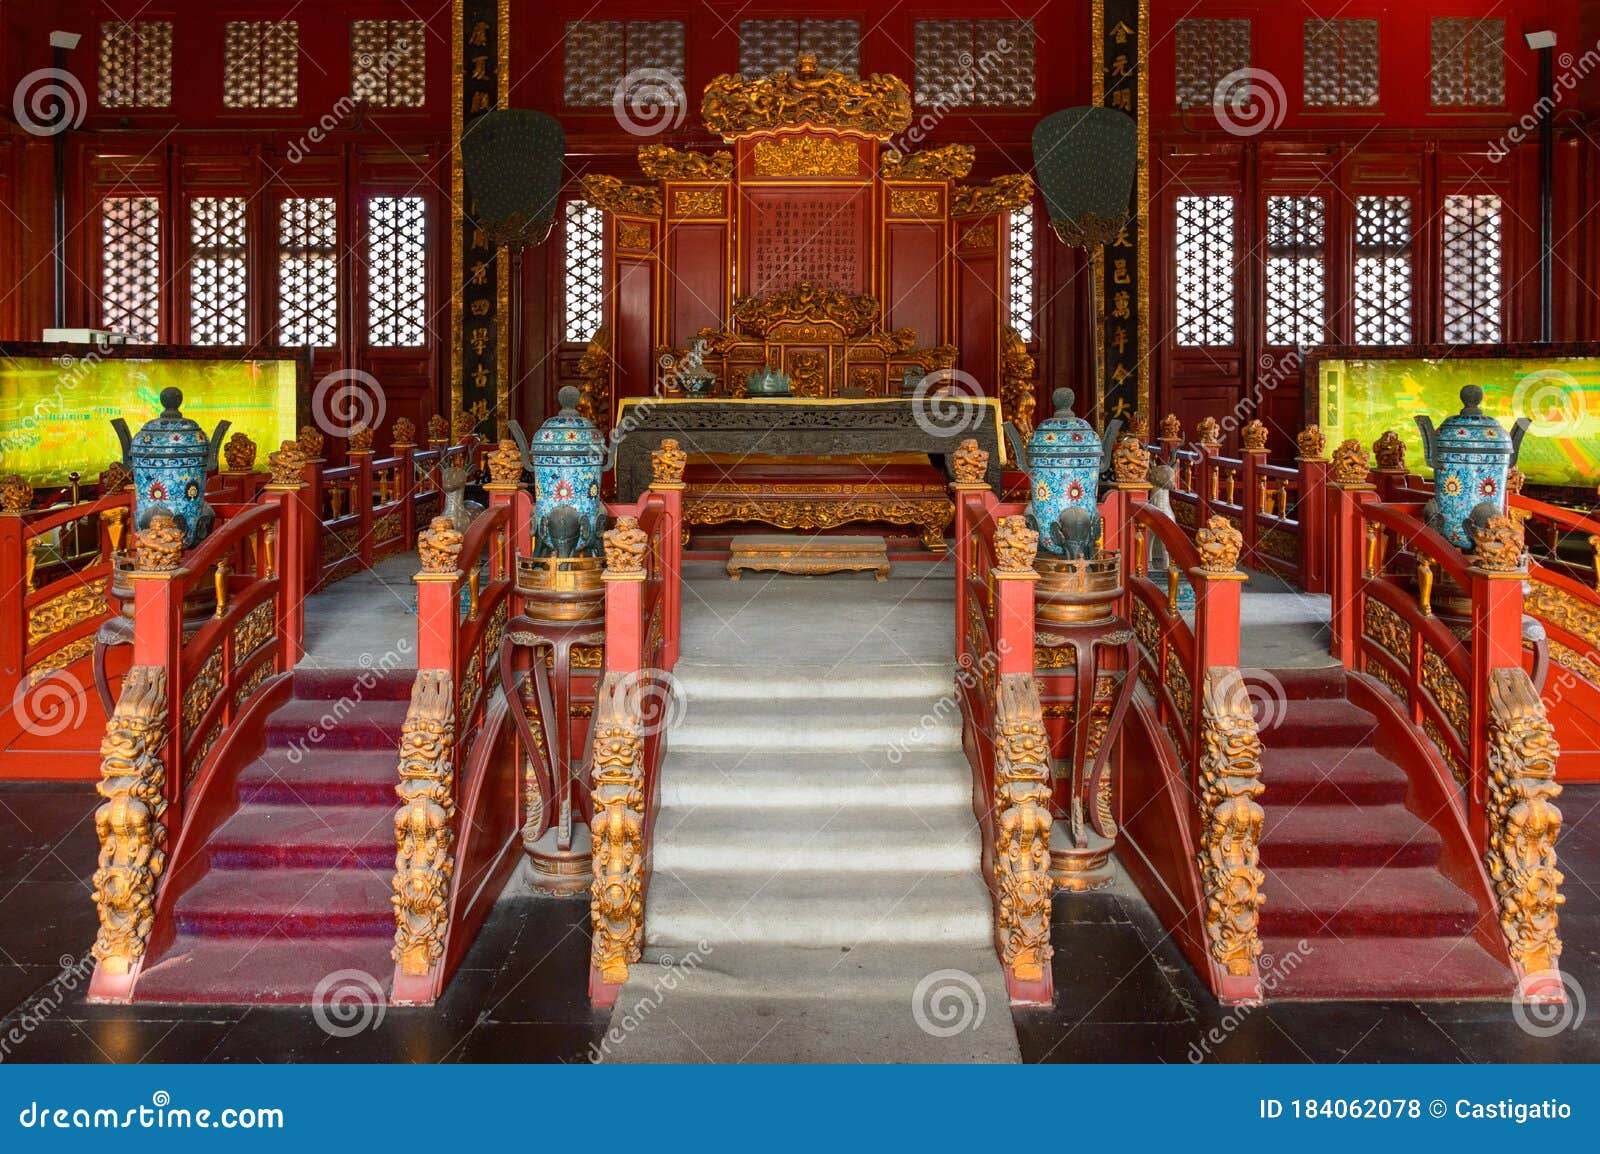 inside confucius temple